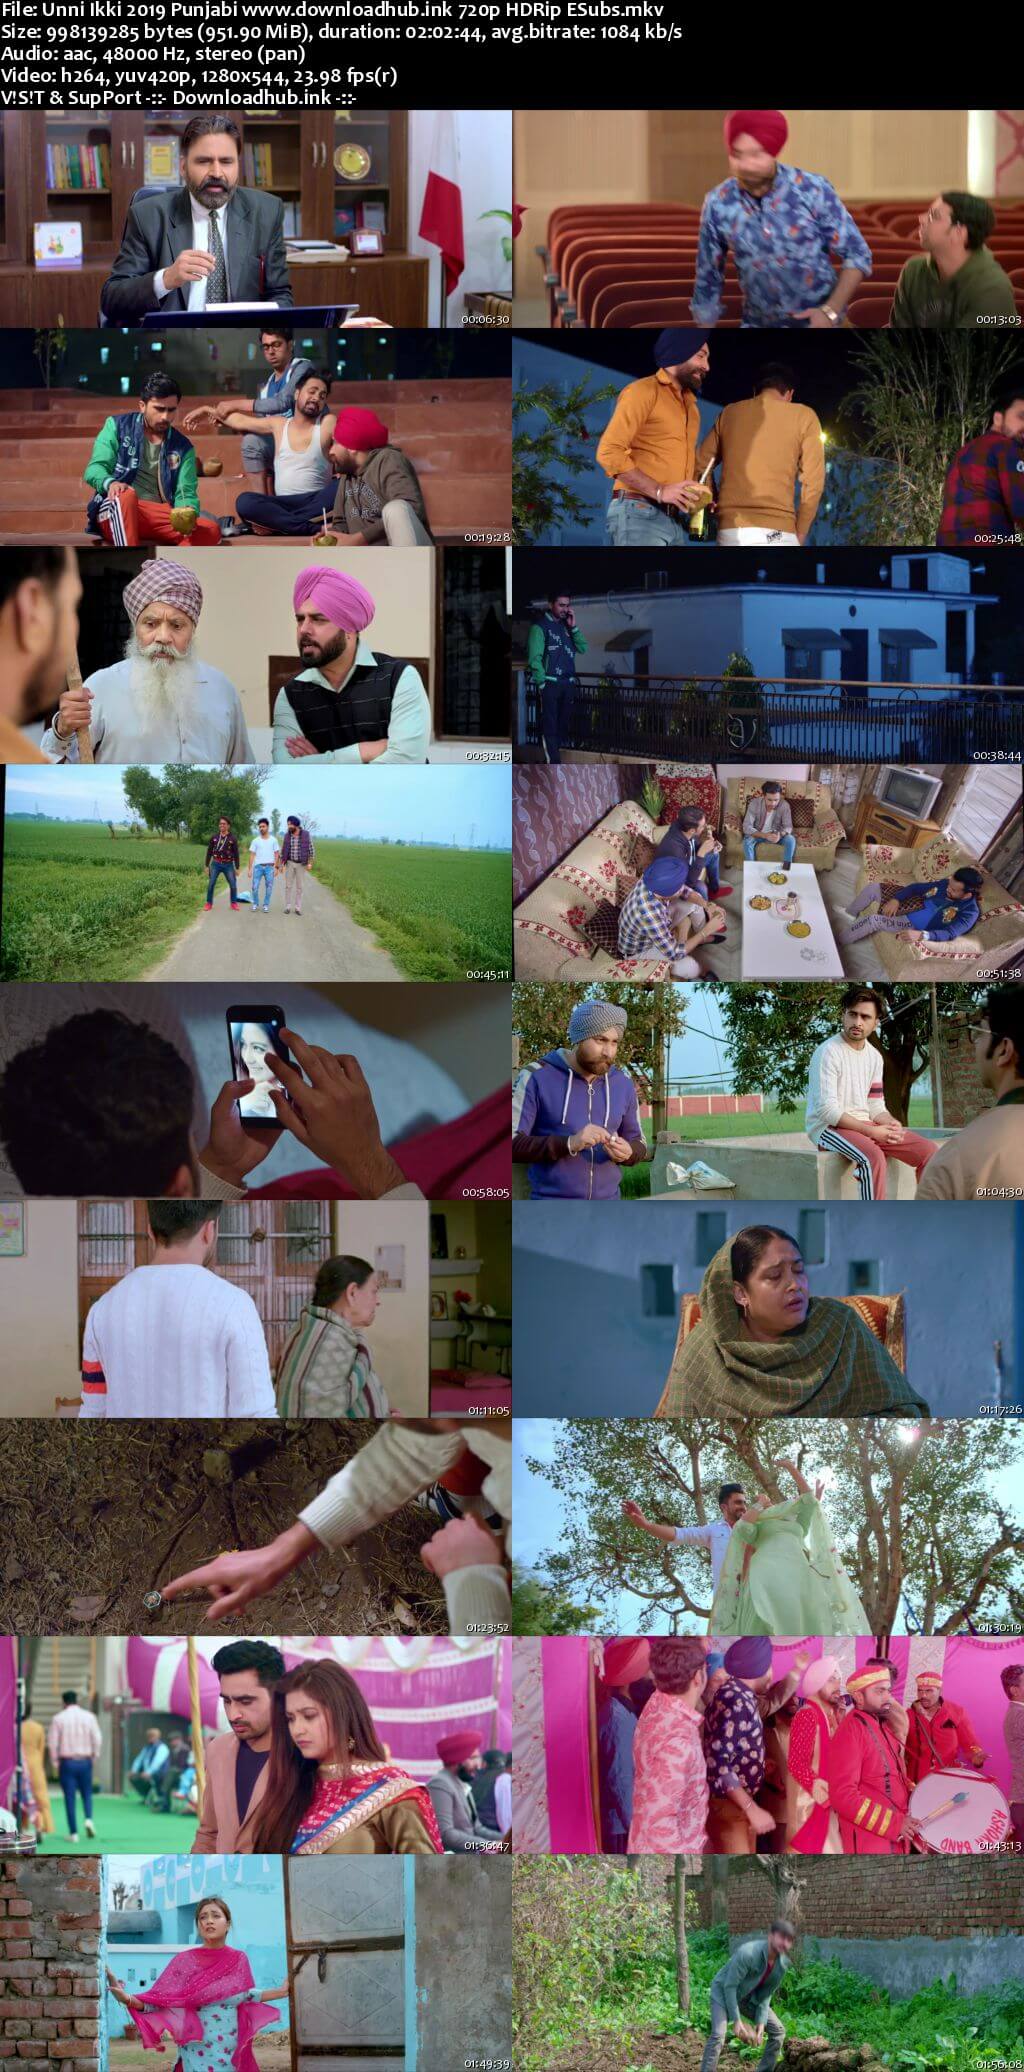 Unni Ikki 2019 Punjabi 720p HDRip ESubs